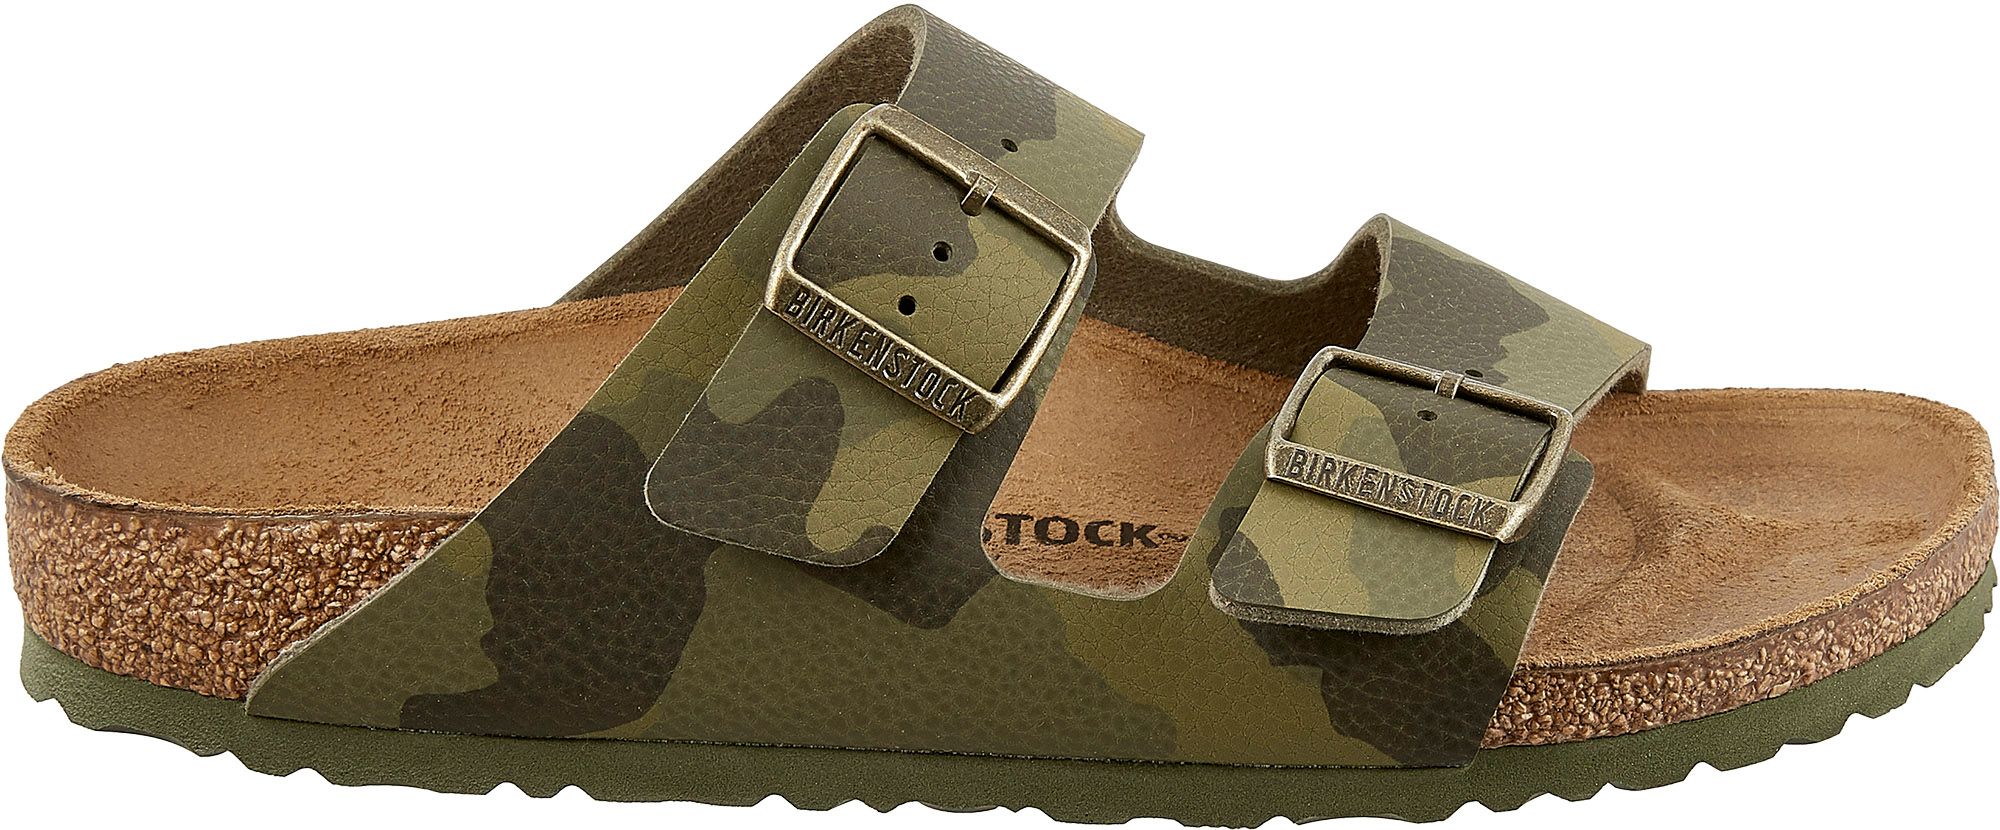 birkenstock sandals retailers